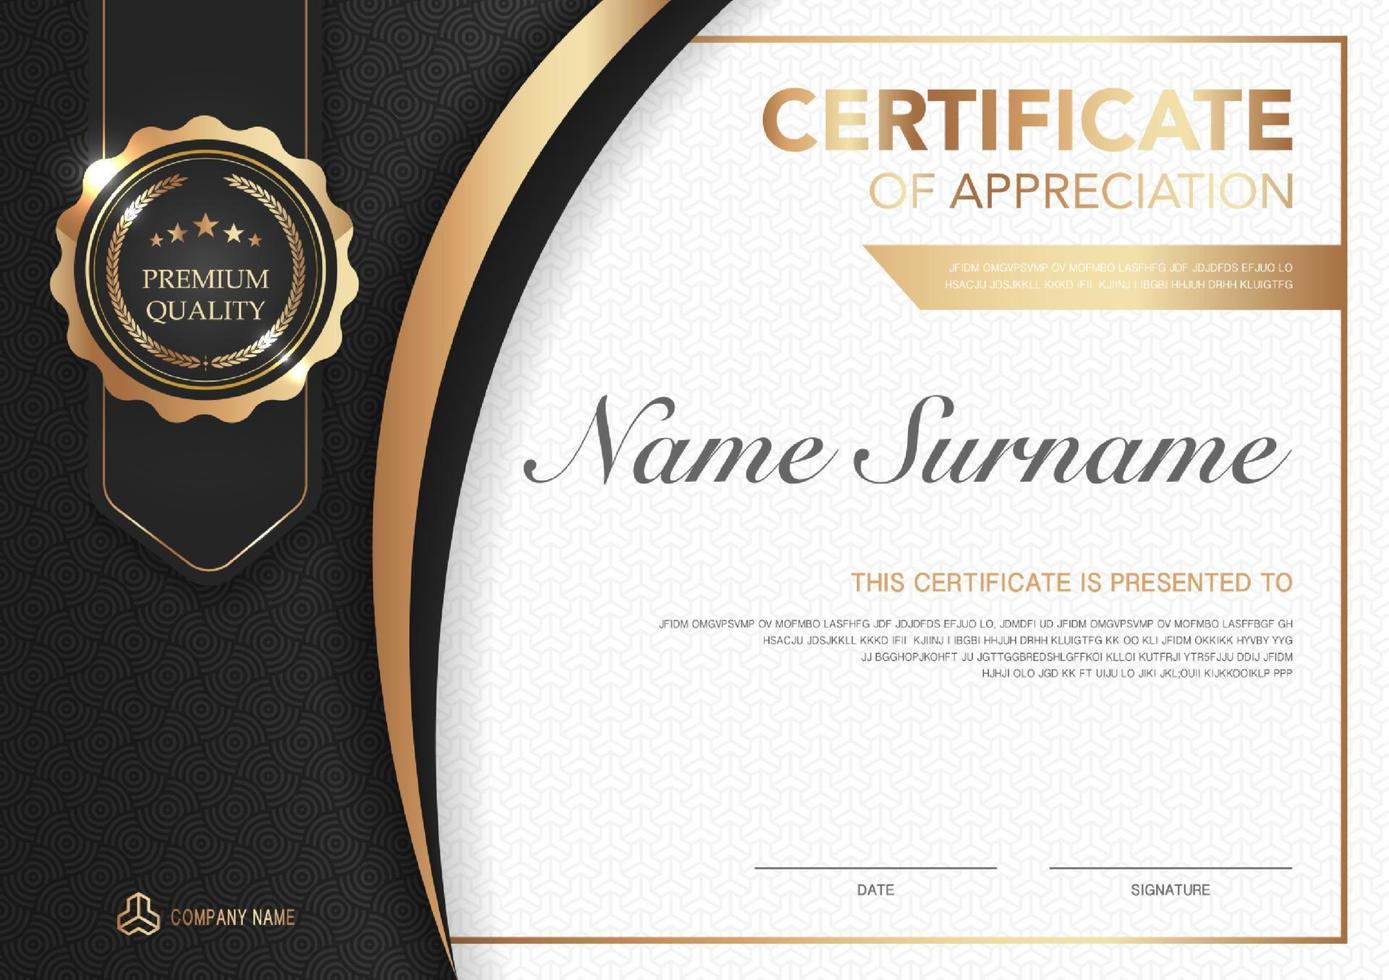 Plantilla de certificado con imagen de estilo de lujo en negro y oro. diploma de diseño geométrico moderno. vector eps10.